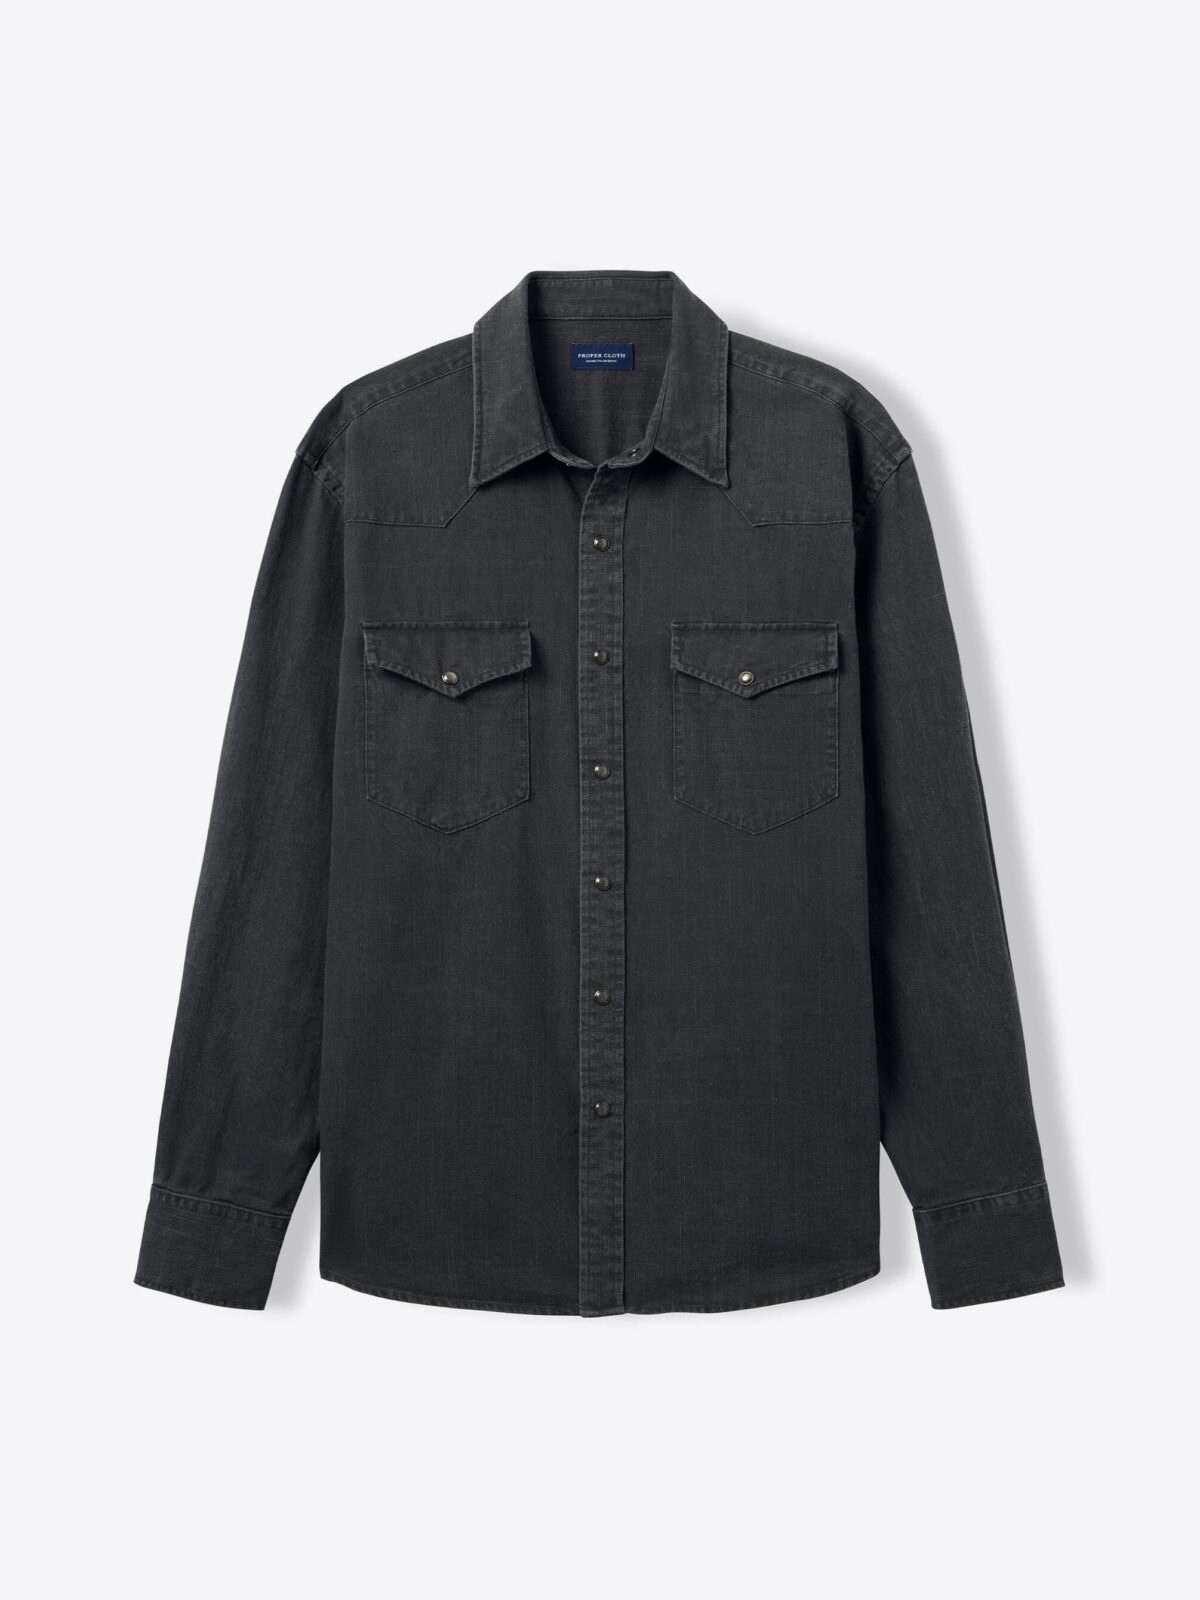 Albiate Washed Black Slub Denim Shirt by Proper Cloth